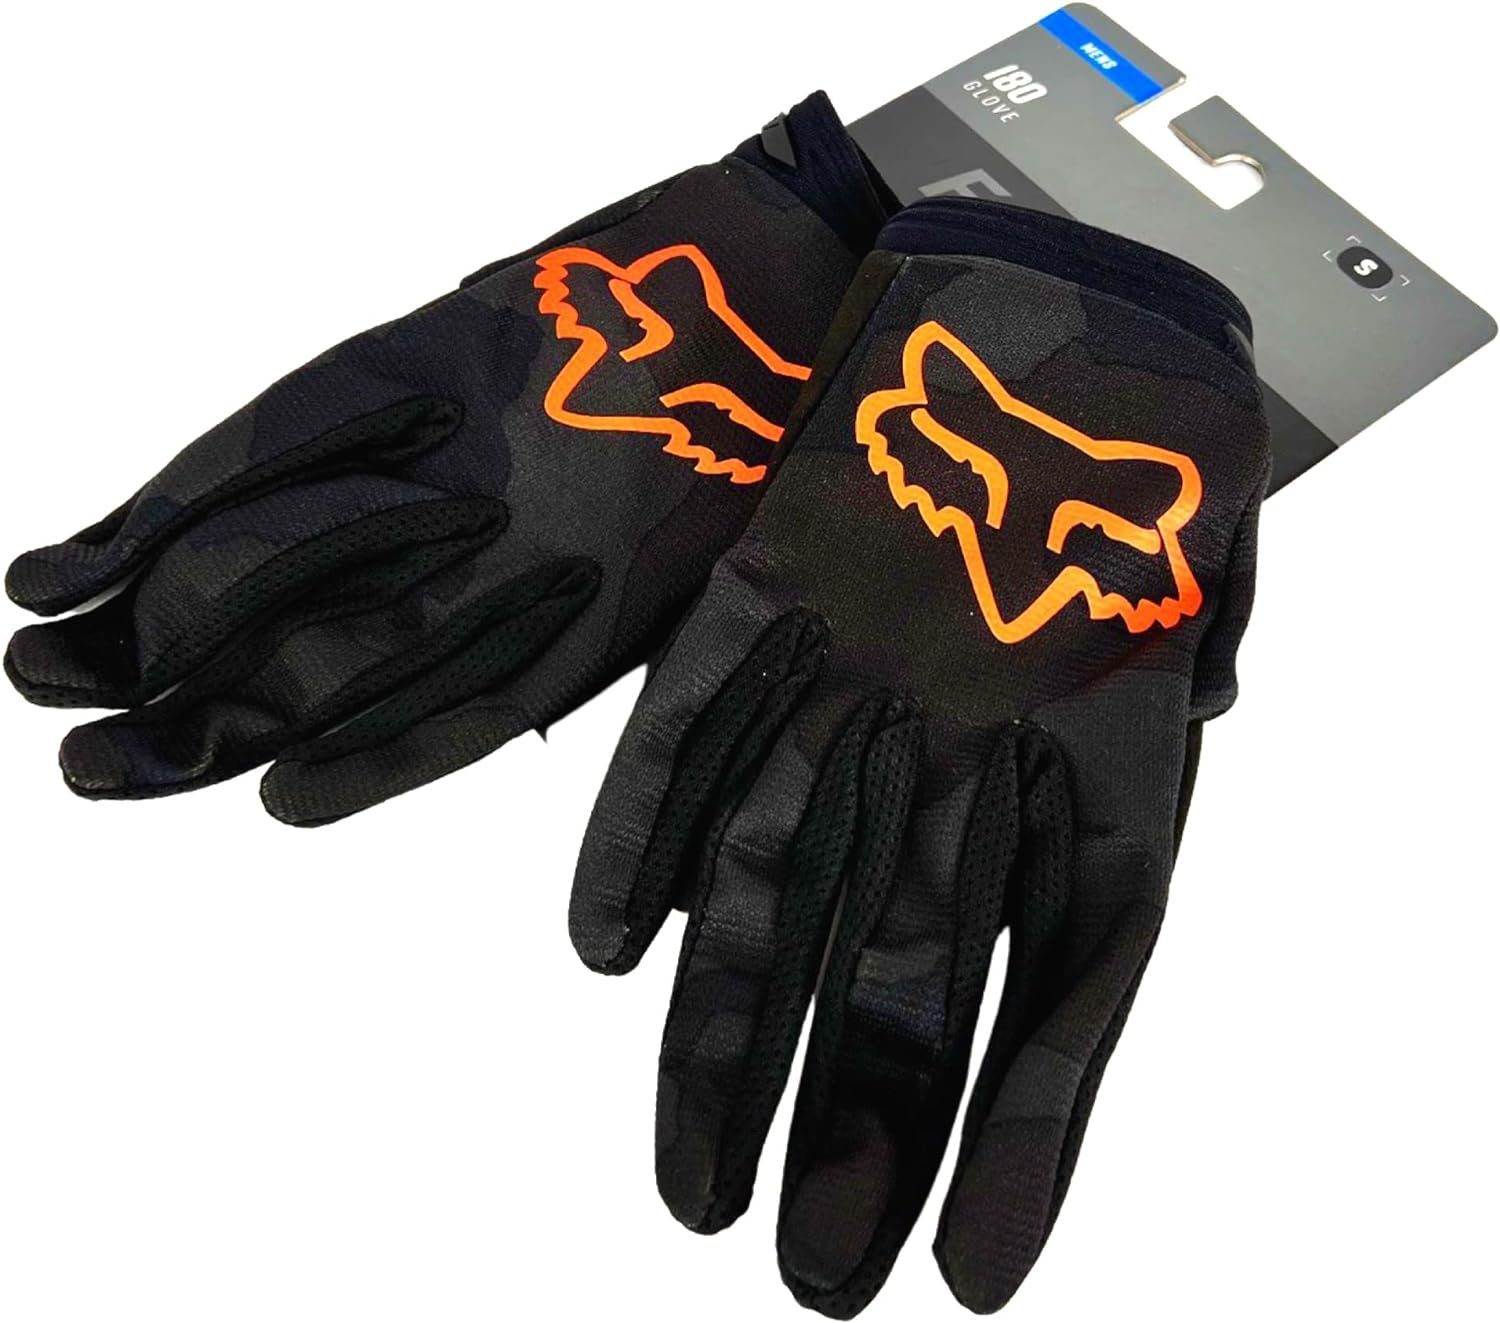 Motorradhandschuhe schwarz/camo Trev Handschuhe Fox 180 Fox Glove Racing